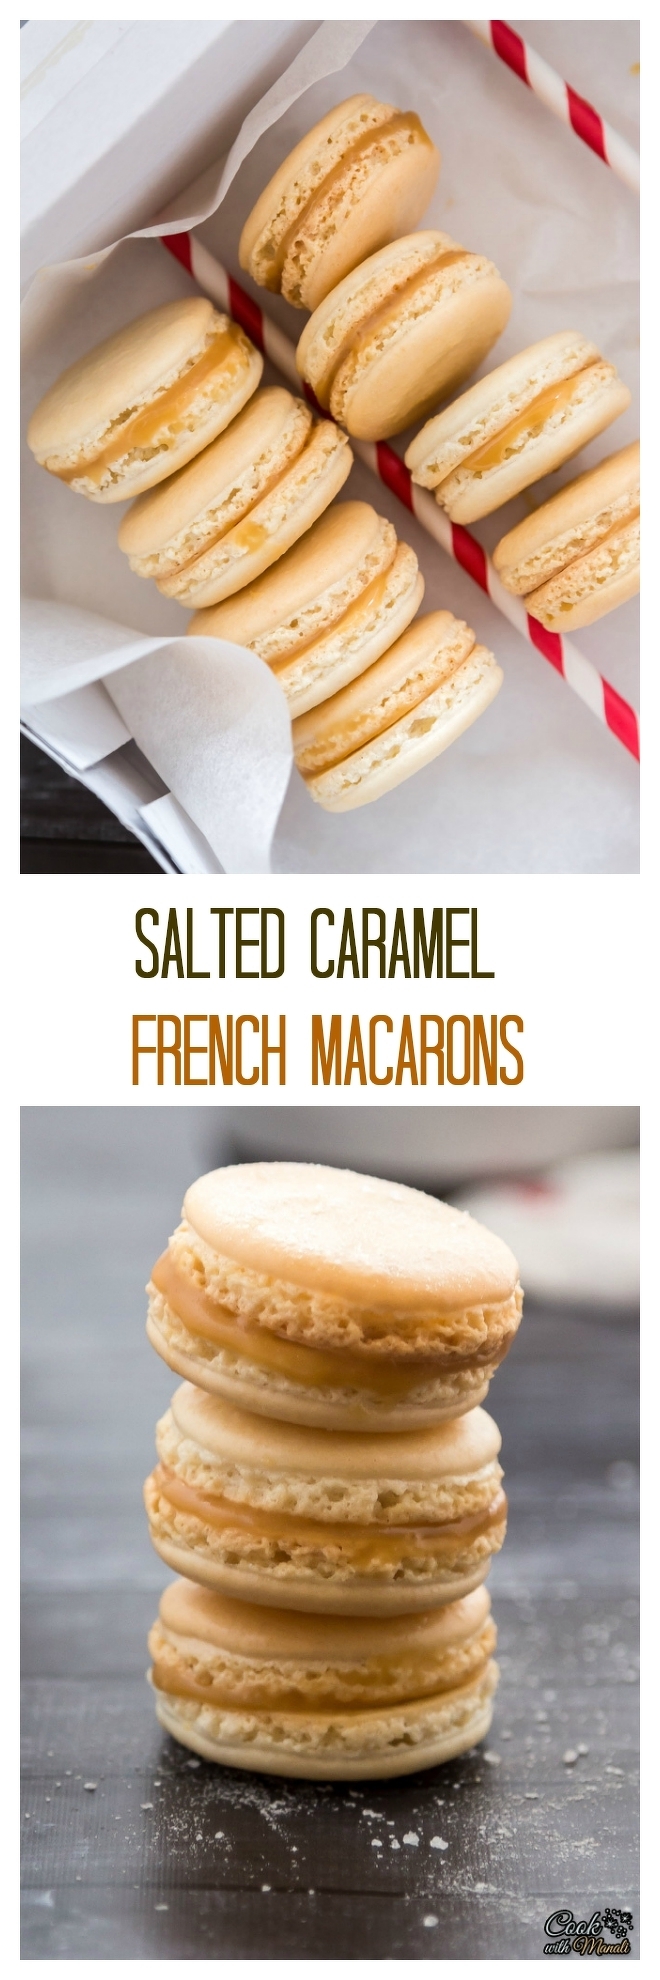 Salted Caramel Macarons Collage-nocwm